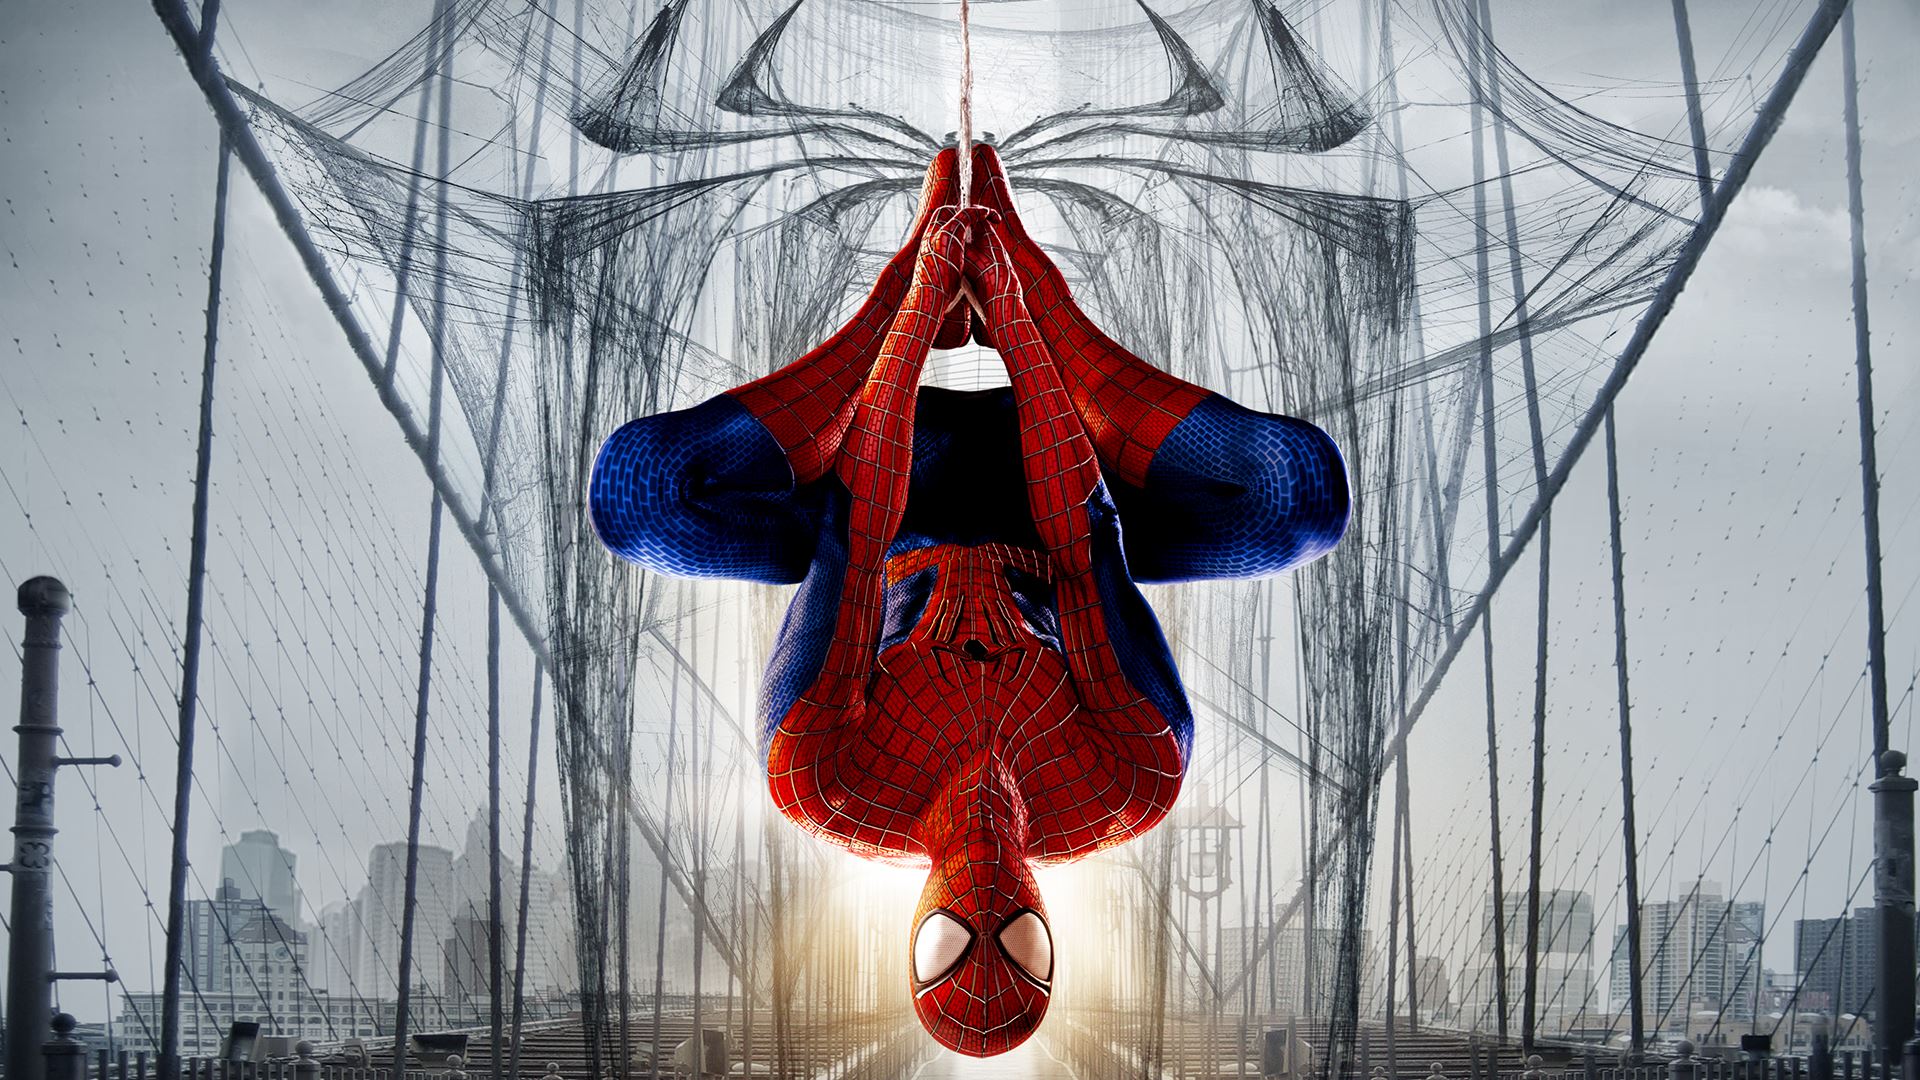 the amazing spider man 2, spider man, movie